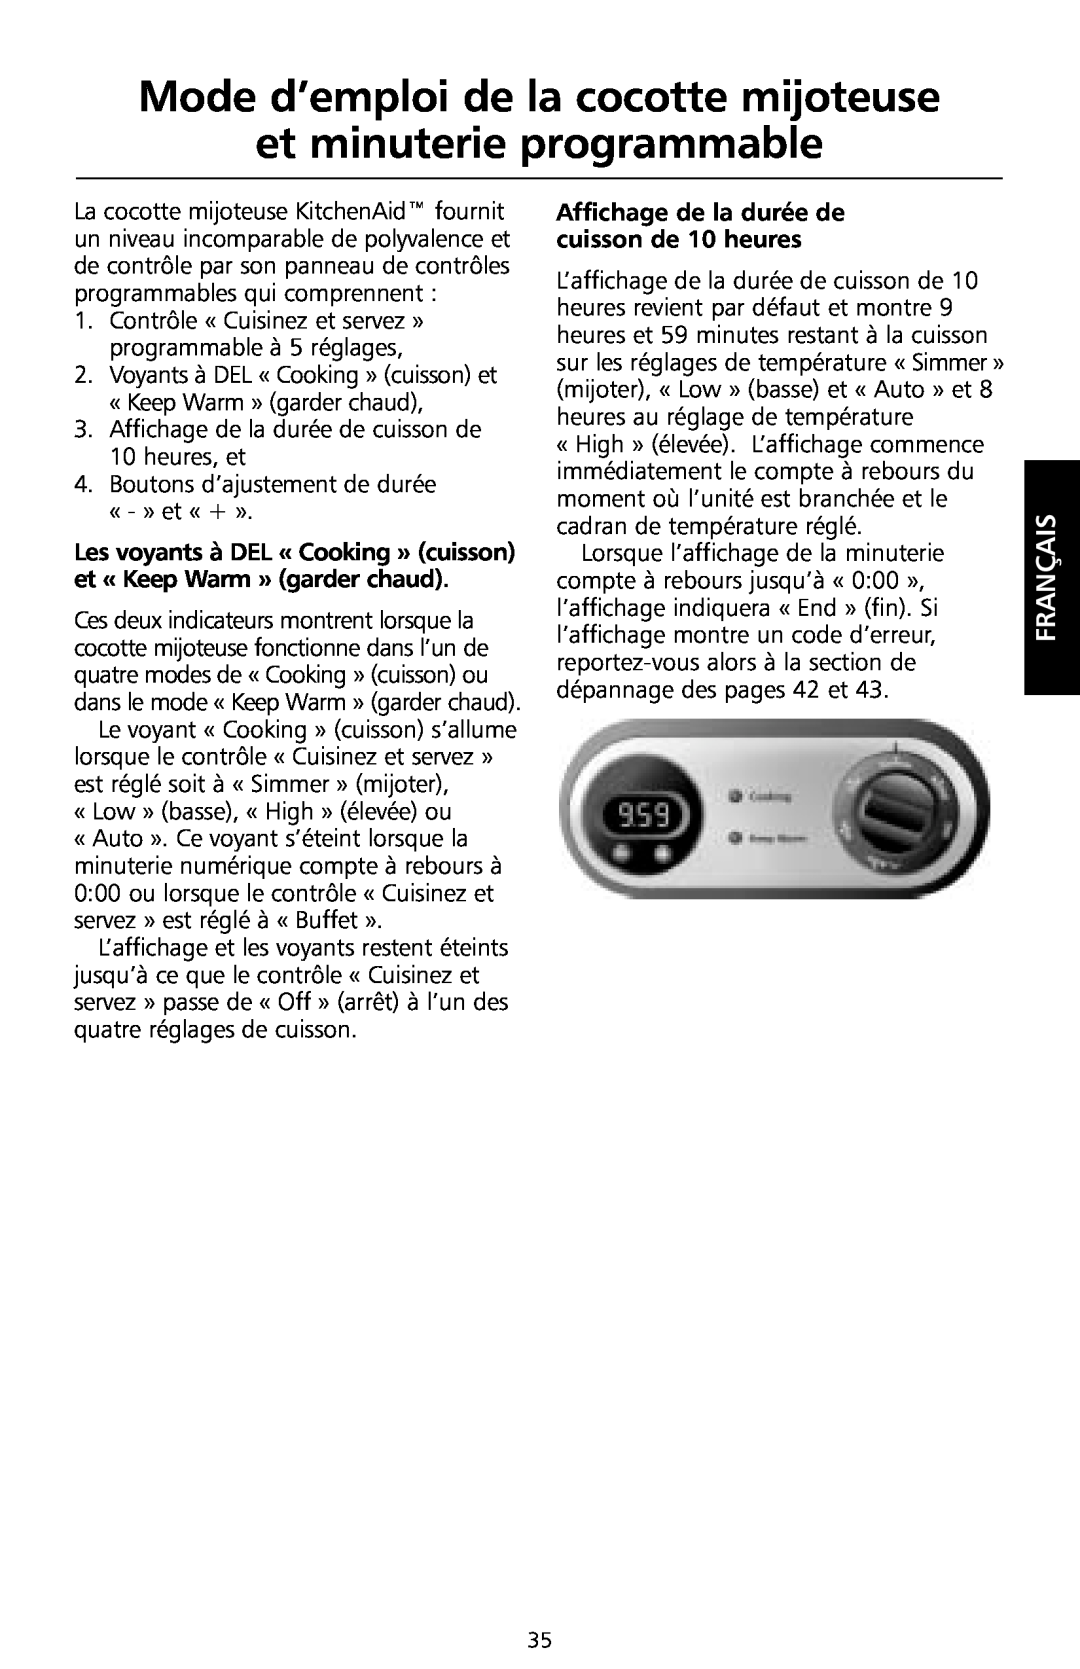 KitchenAid KSC700 manual Mode d’emploi de la cocotte mijoteuse et minuterie programmable, Français 